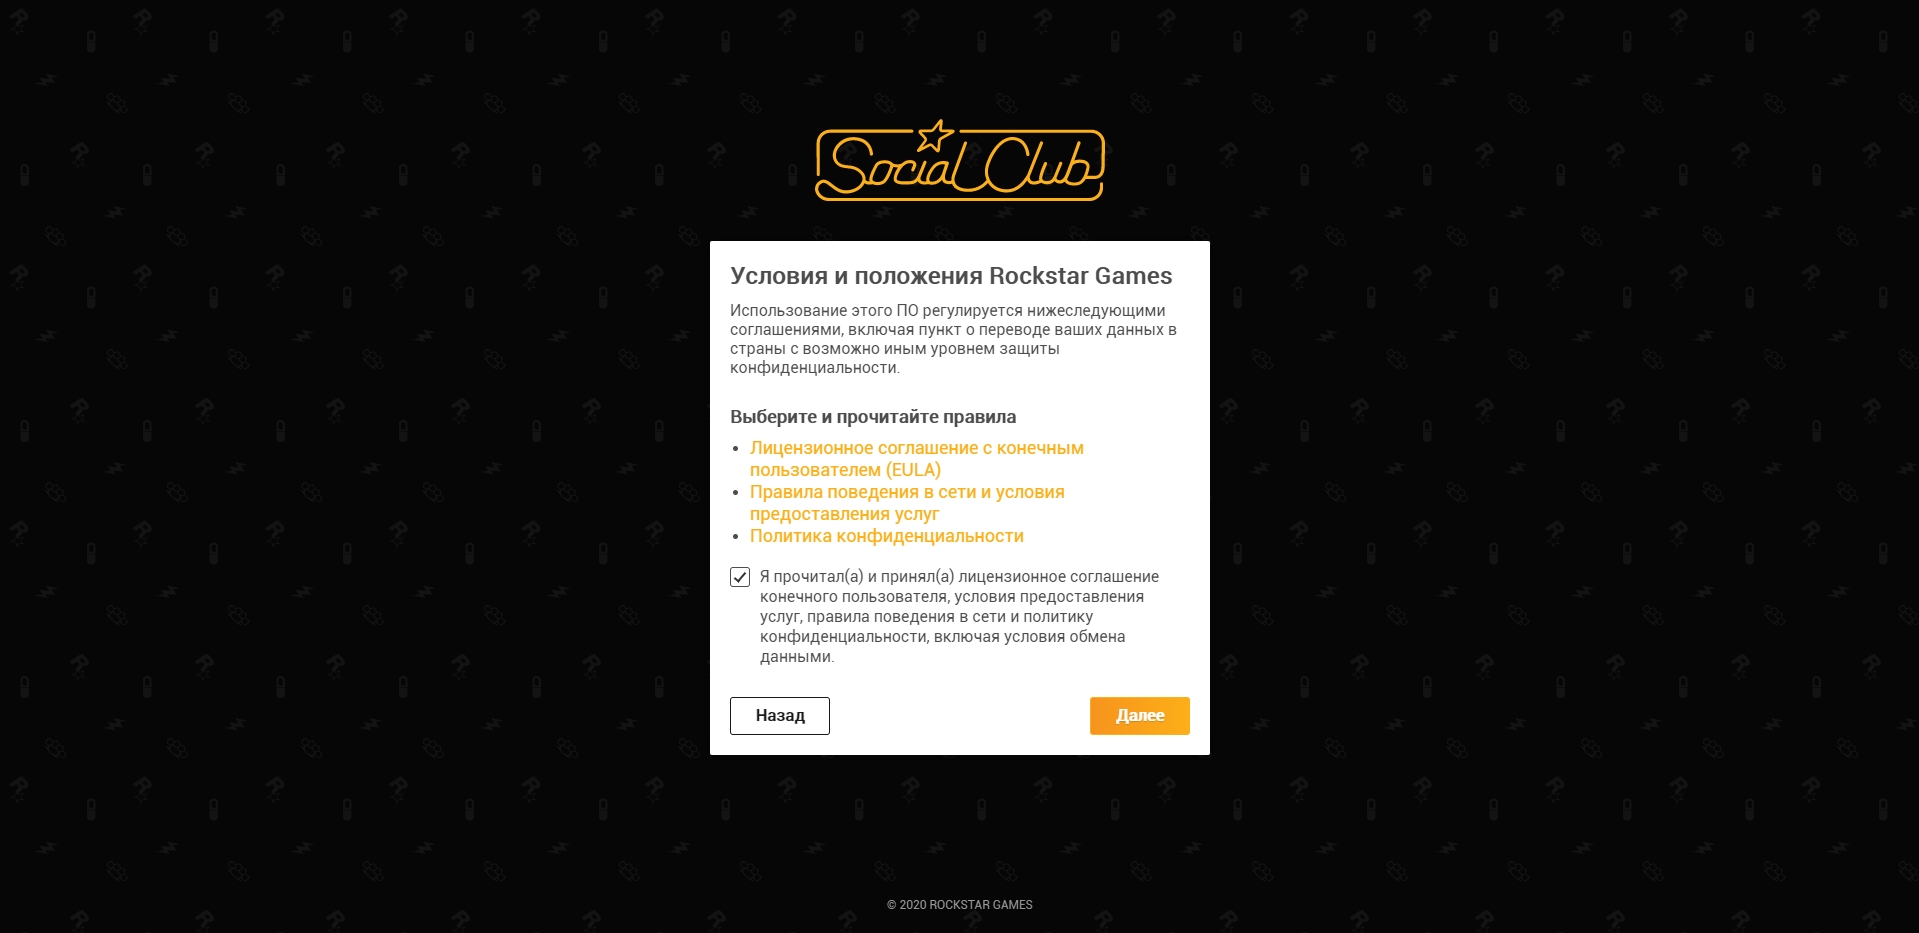 Как зарегистрировать новую учётную запись пользователя в Social Club